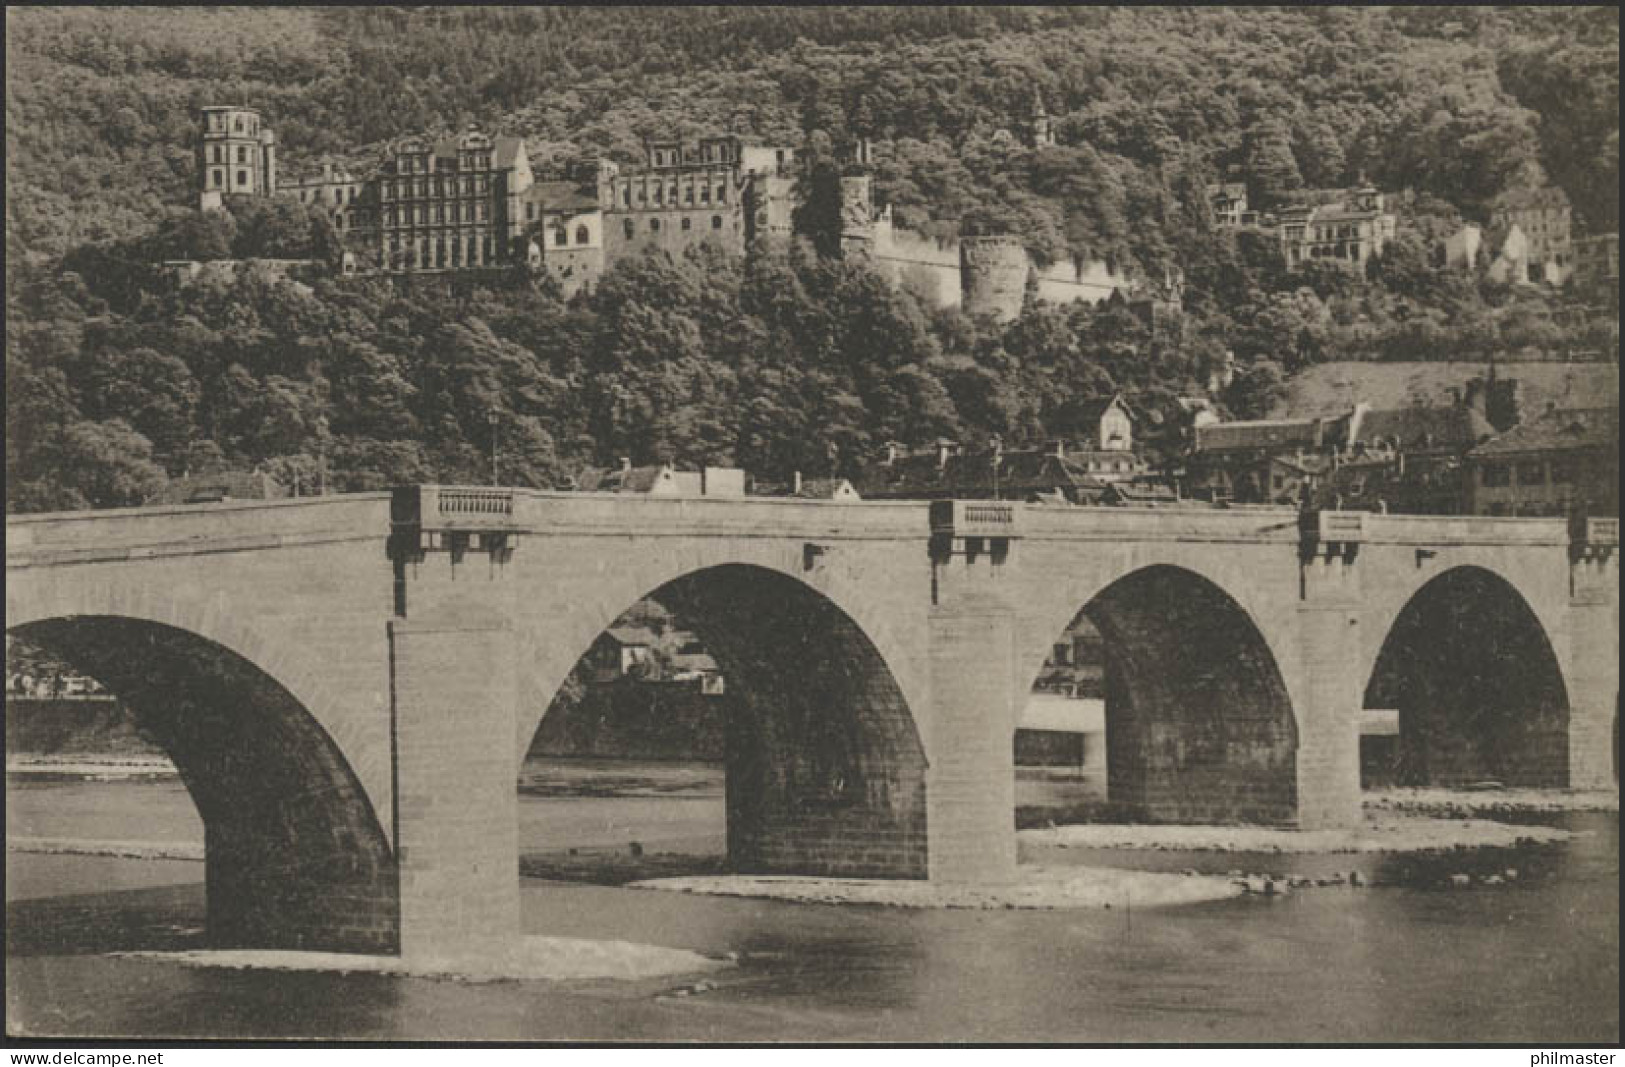 Ansichtskarte Feldpost Schloss Heidelberg Und Alte Neckarbrücke, 30.3.1915 - Occupazione 1914 – 18